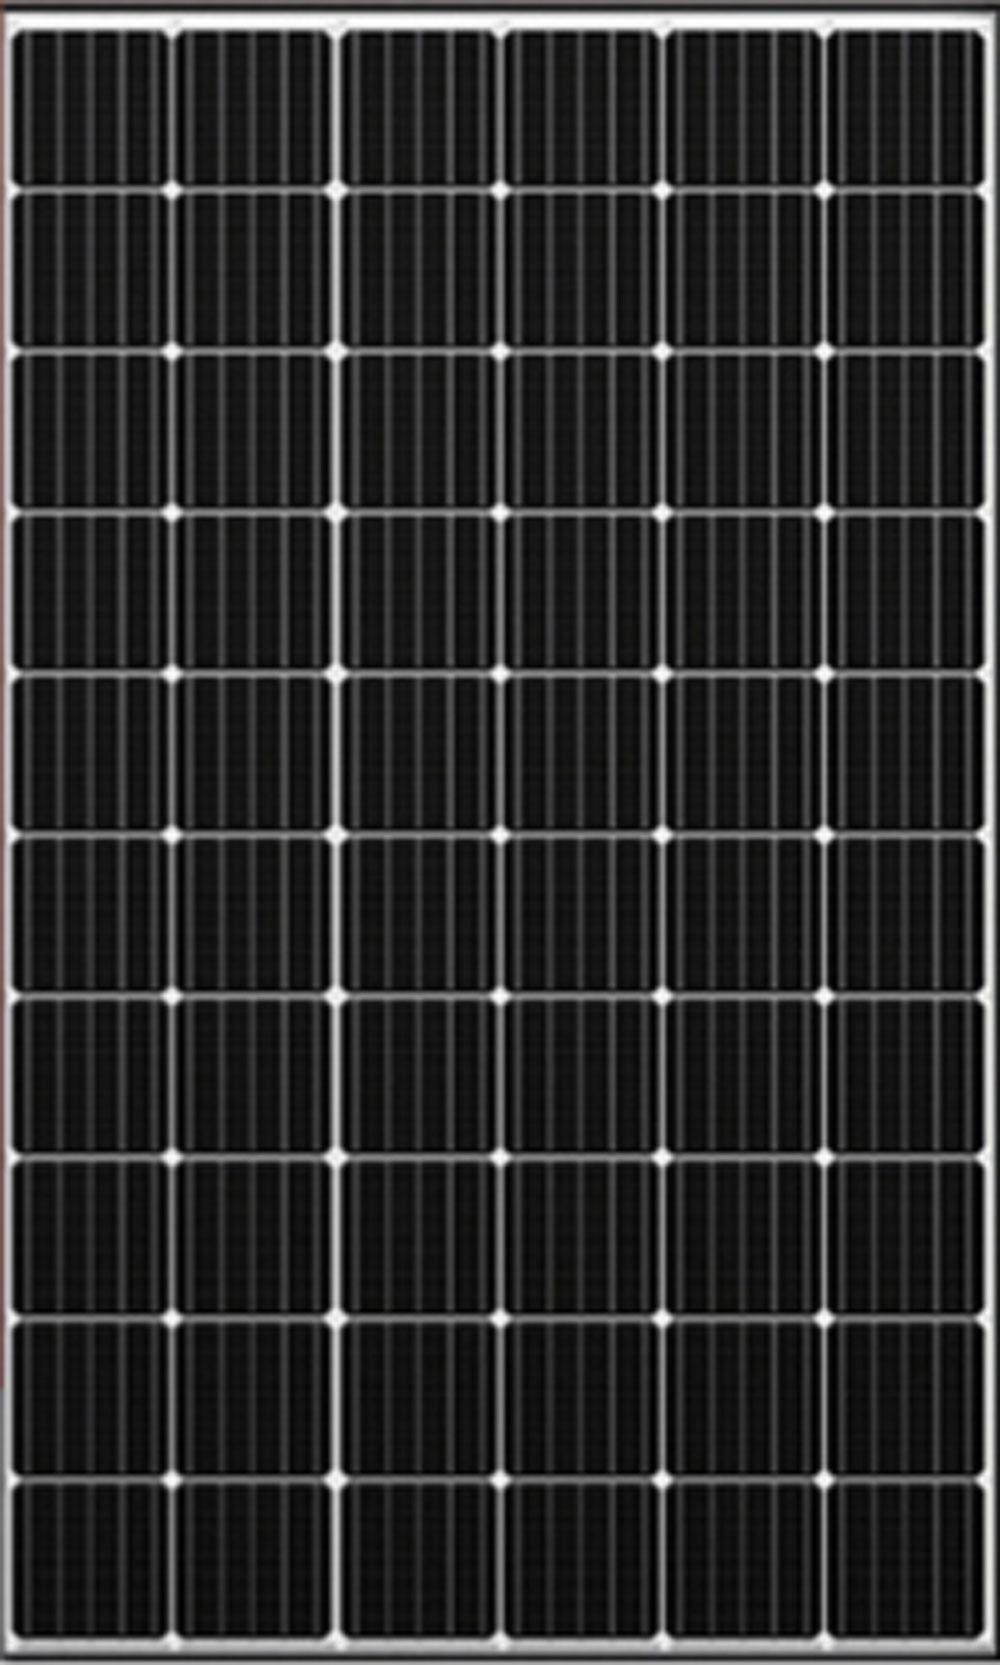 Solare Monocristallino - Fotovoltaico, Silicio, 150 W, per Batterie da 12V  - Modulo Solare per Giardino, Tetto, Caricabatteria p